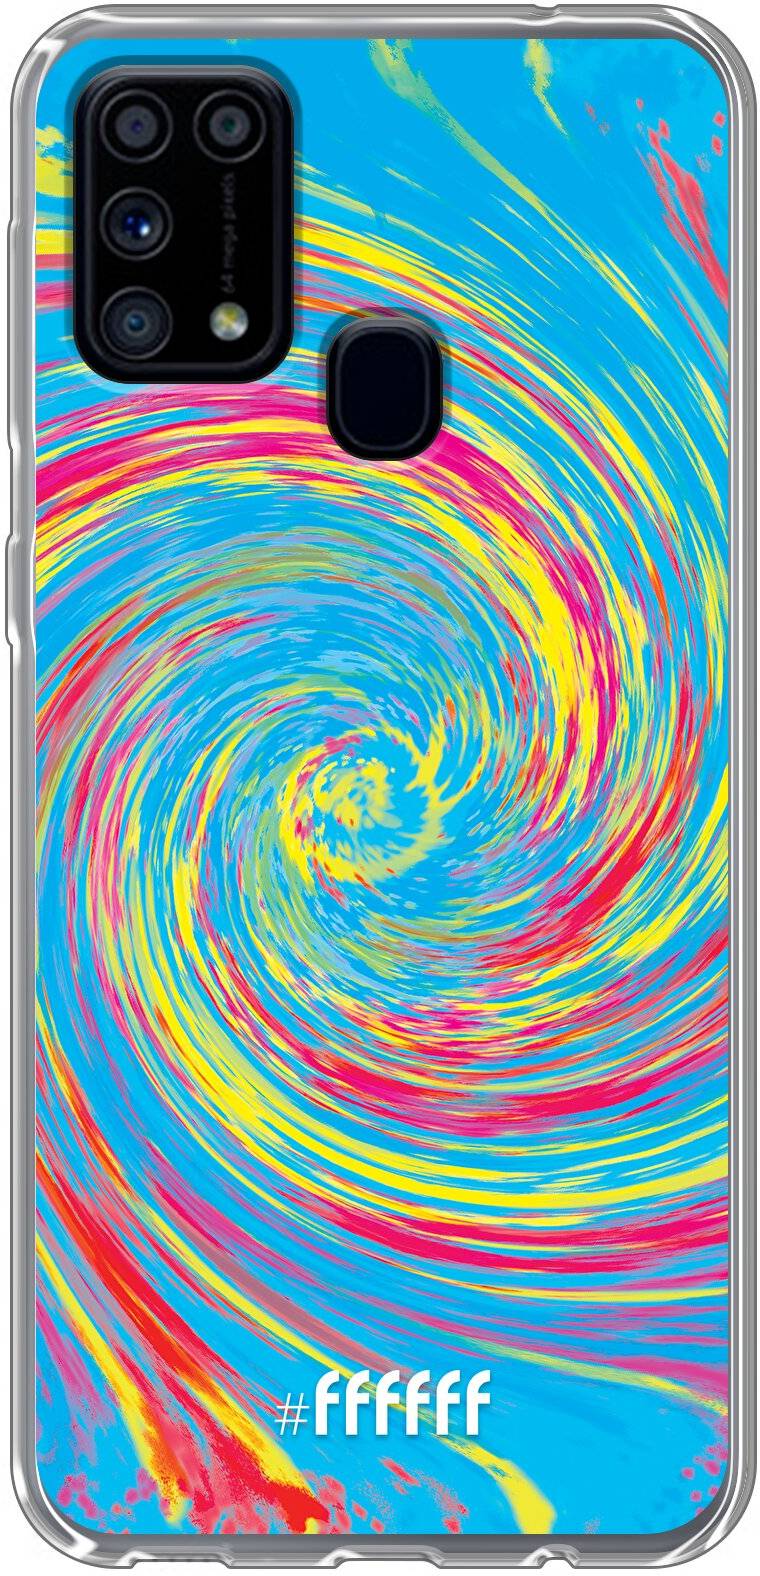 Swirl Tie Dye Galaxy M31